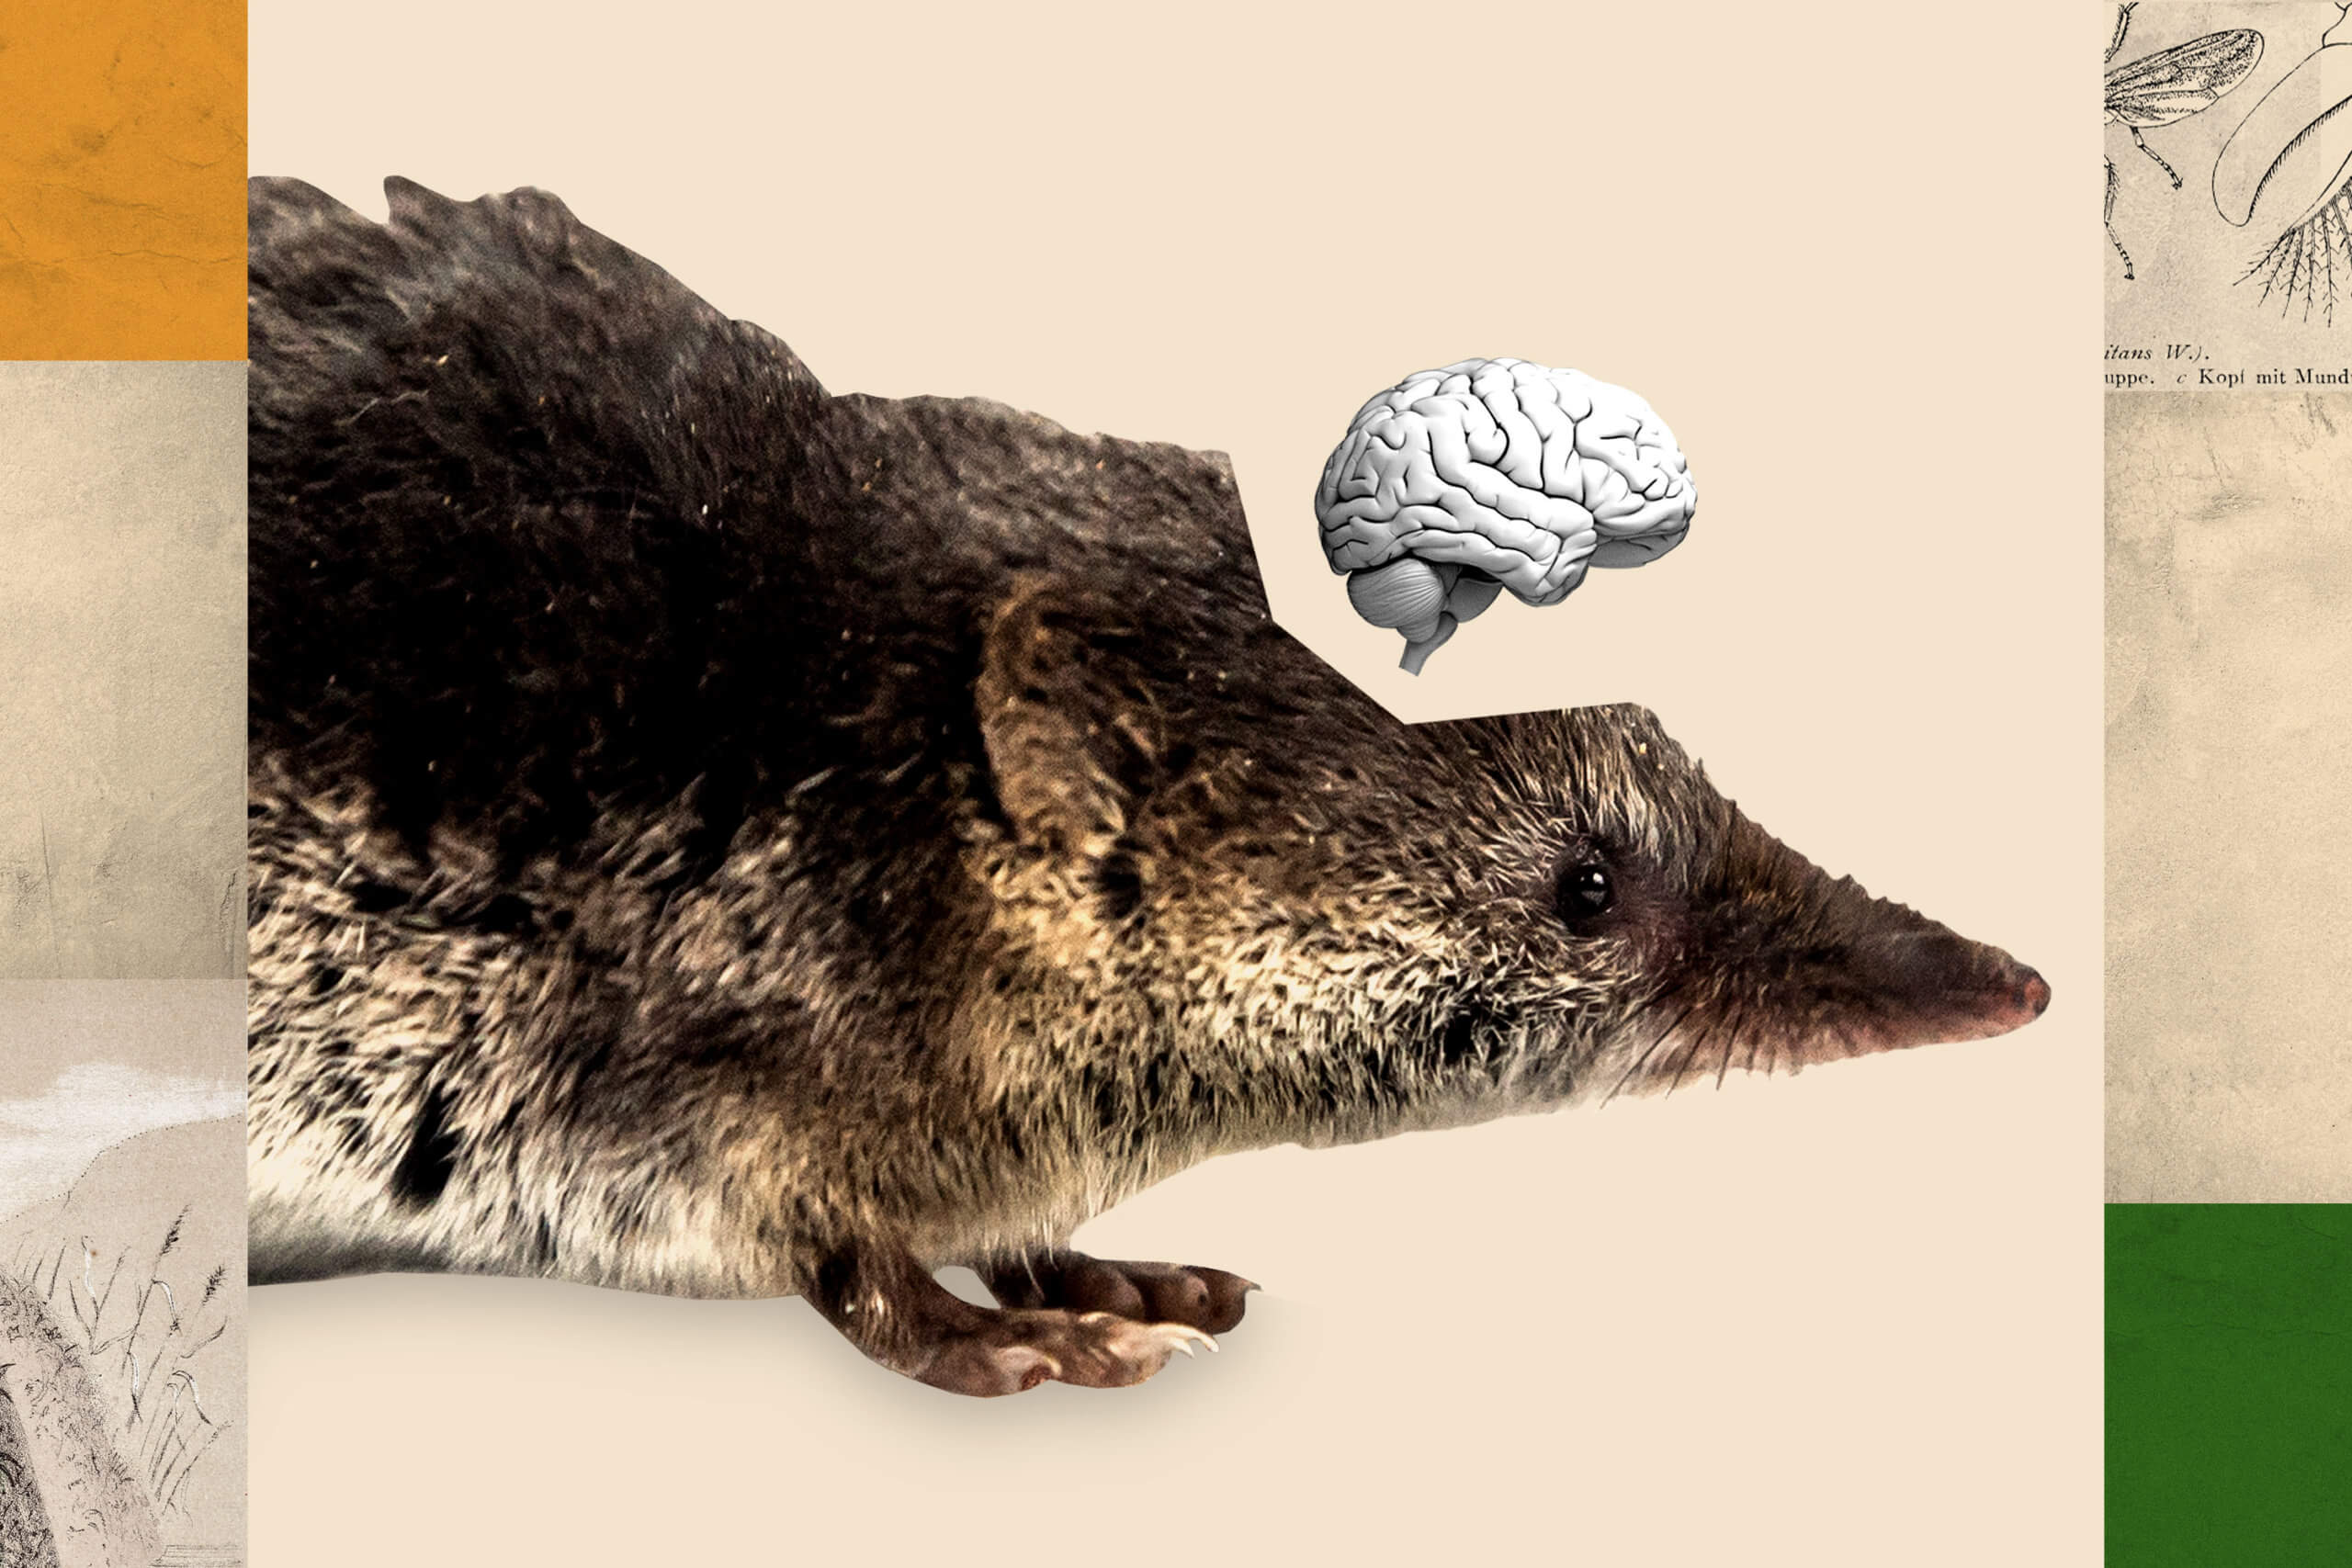 Адаптация к новым условиям. Мозг животных удивительно гибок и способен существенно меняться даже во взрослом возрасте (в зависимости от условий окружающей среды). Фото.